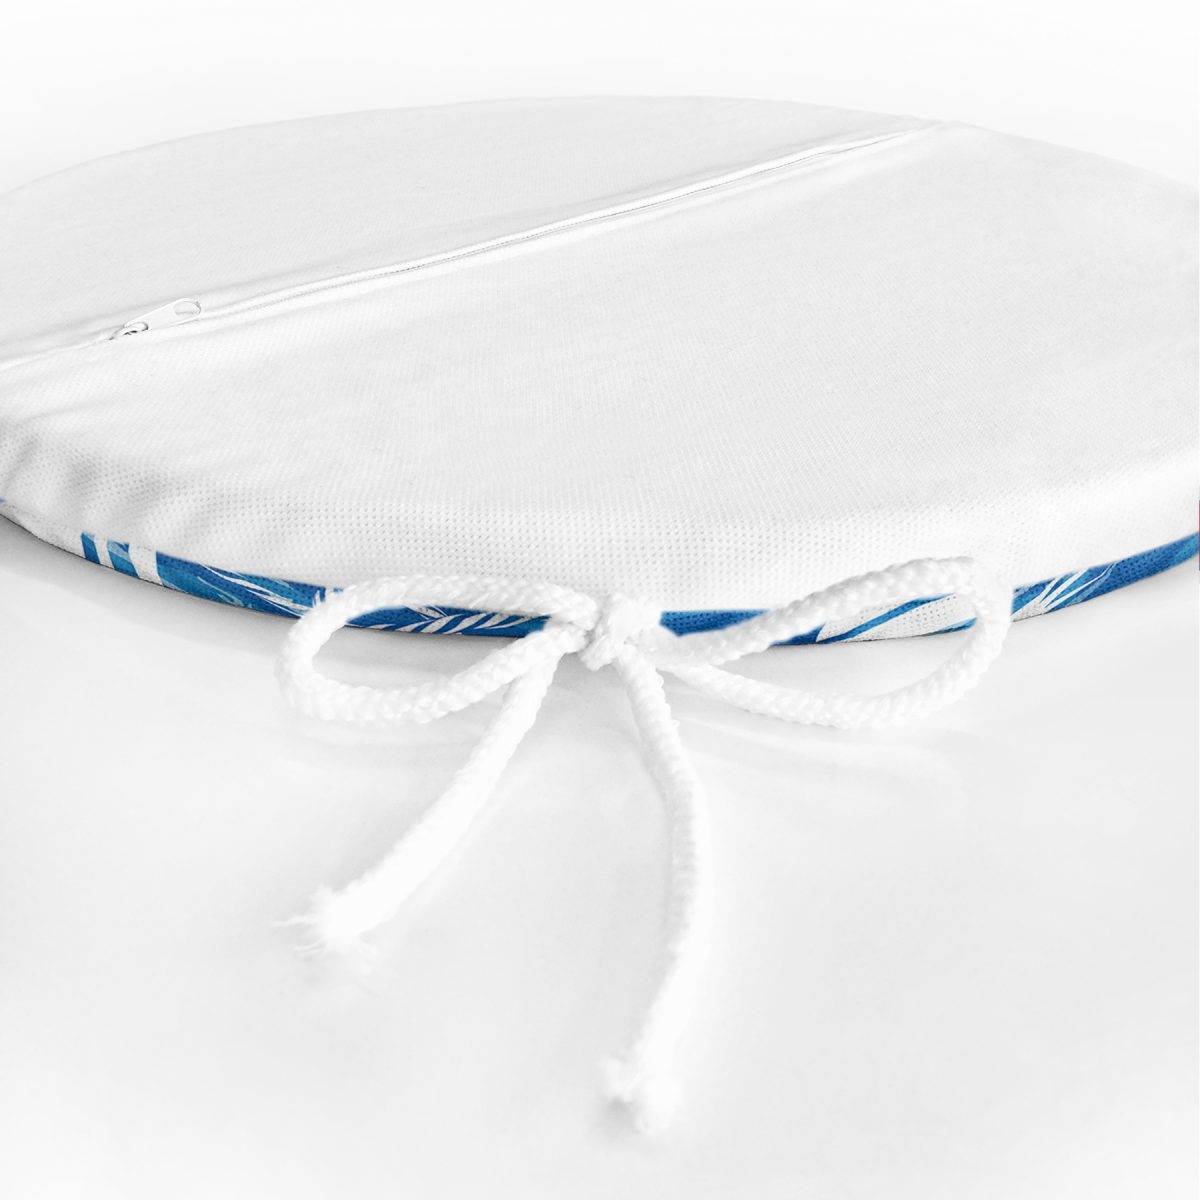 Mavi Beyaz Zeminli Yelken Desenli Dijital Baskılı Modern Yuvarlak Fermuarlı Sandalye Minderi Realhomes